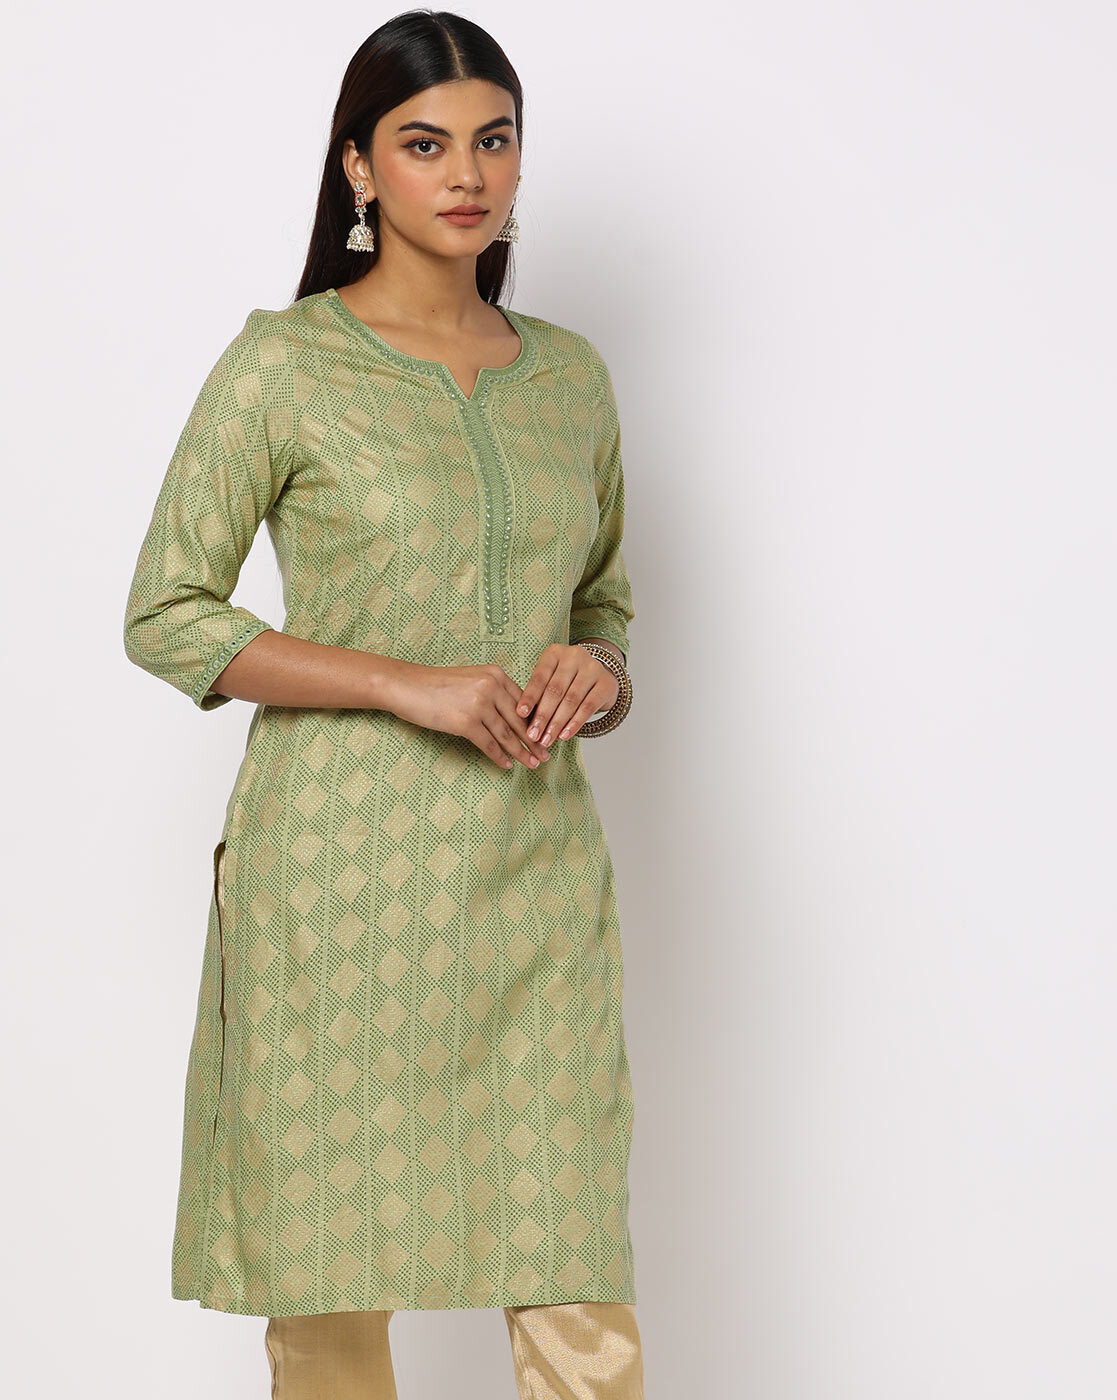 Admyrin Green Poly Silk With Full Zari Jacquard Work Kurti at Rs 699.00 |  Surat| ID: 2849081436362